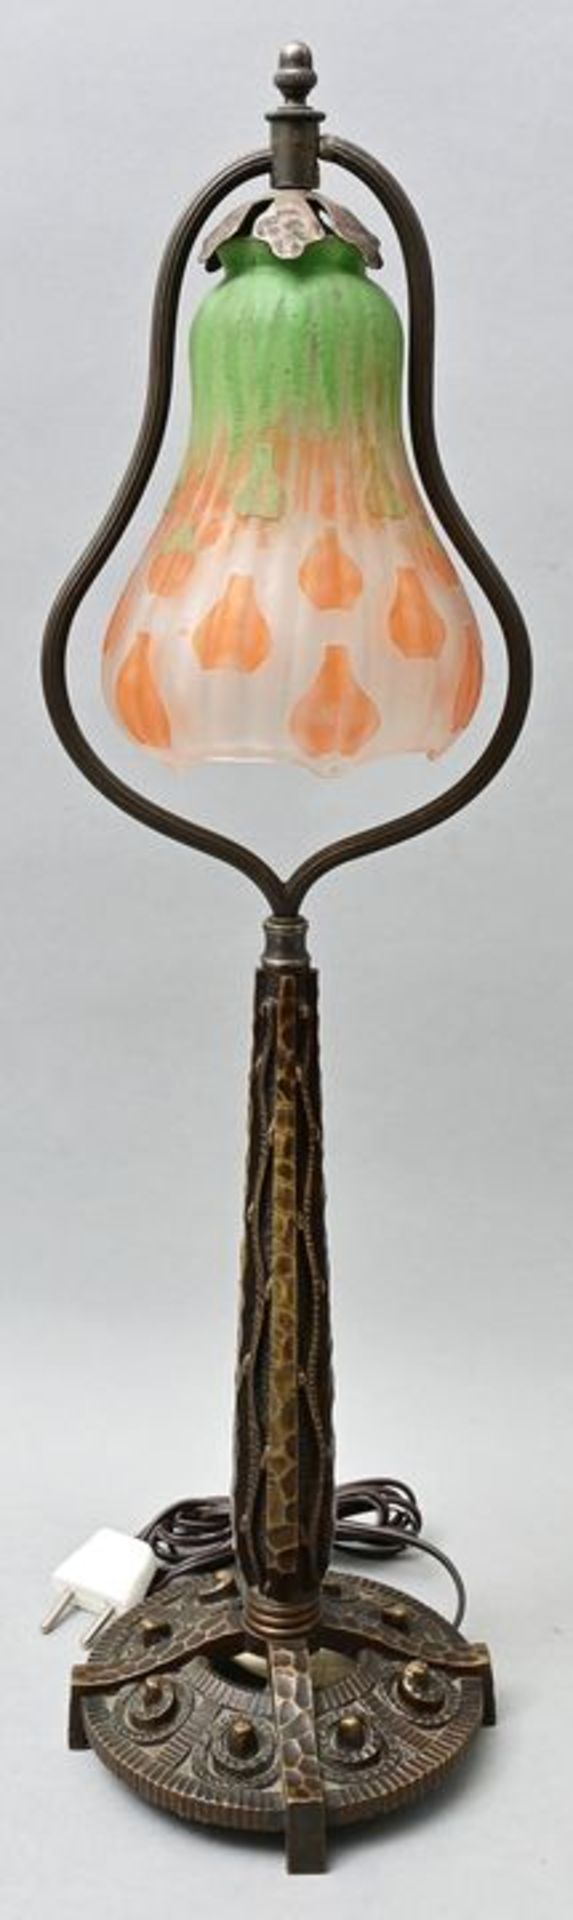 Jugendstil-Tischlampe/ art nouveau table lamp